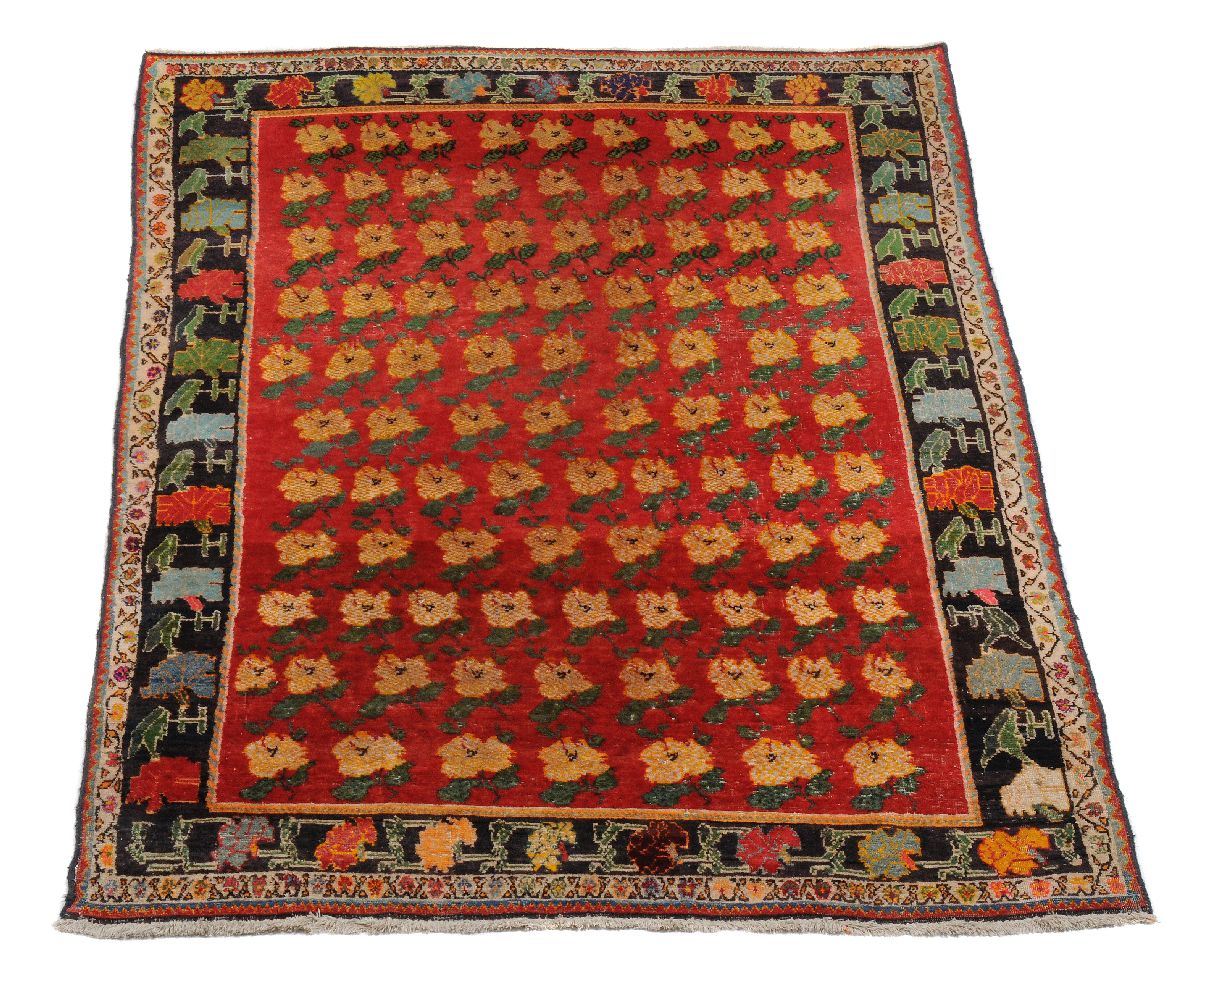 A woven rug